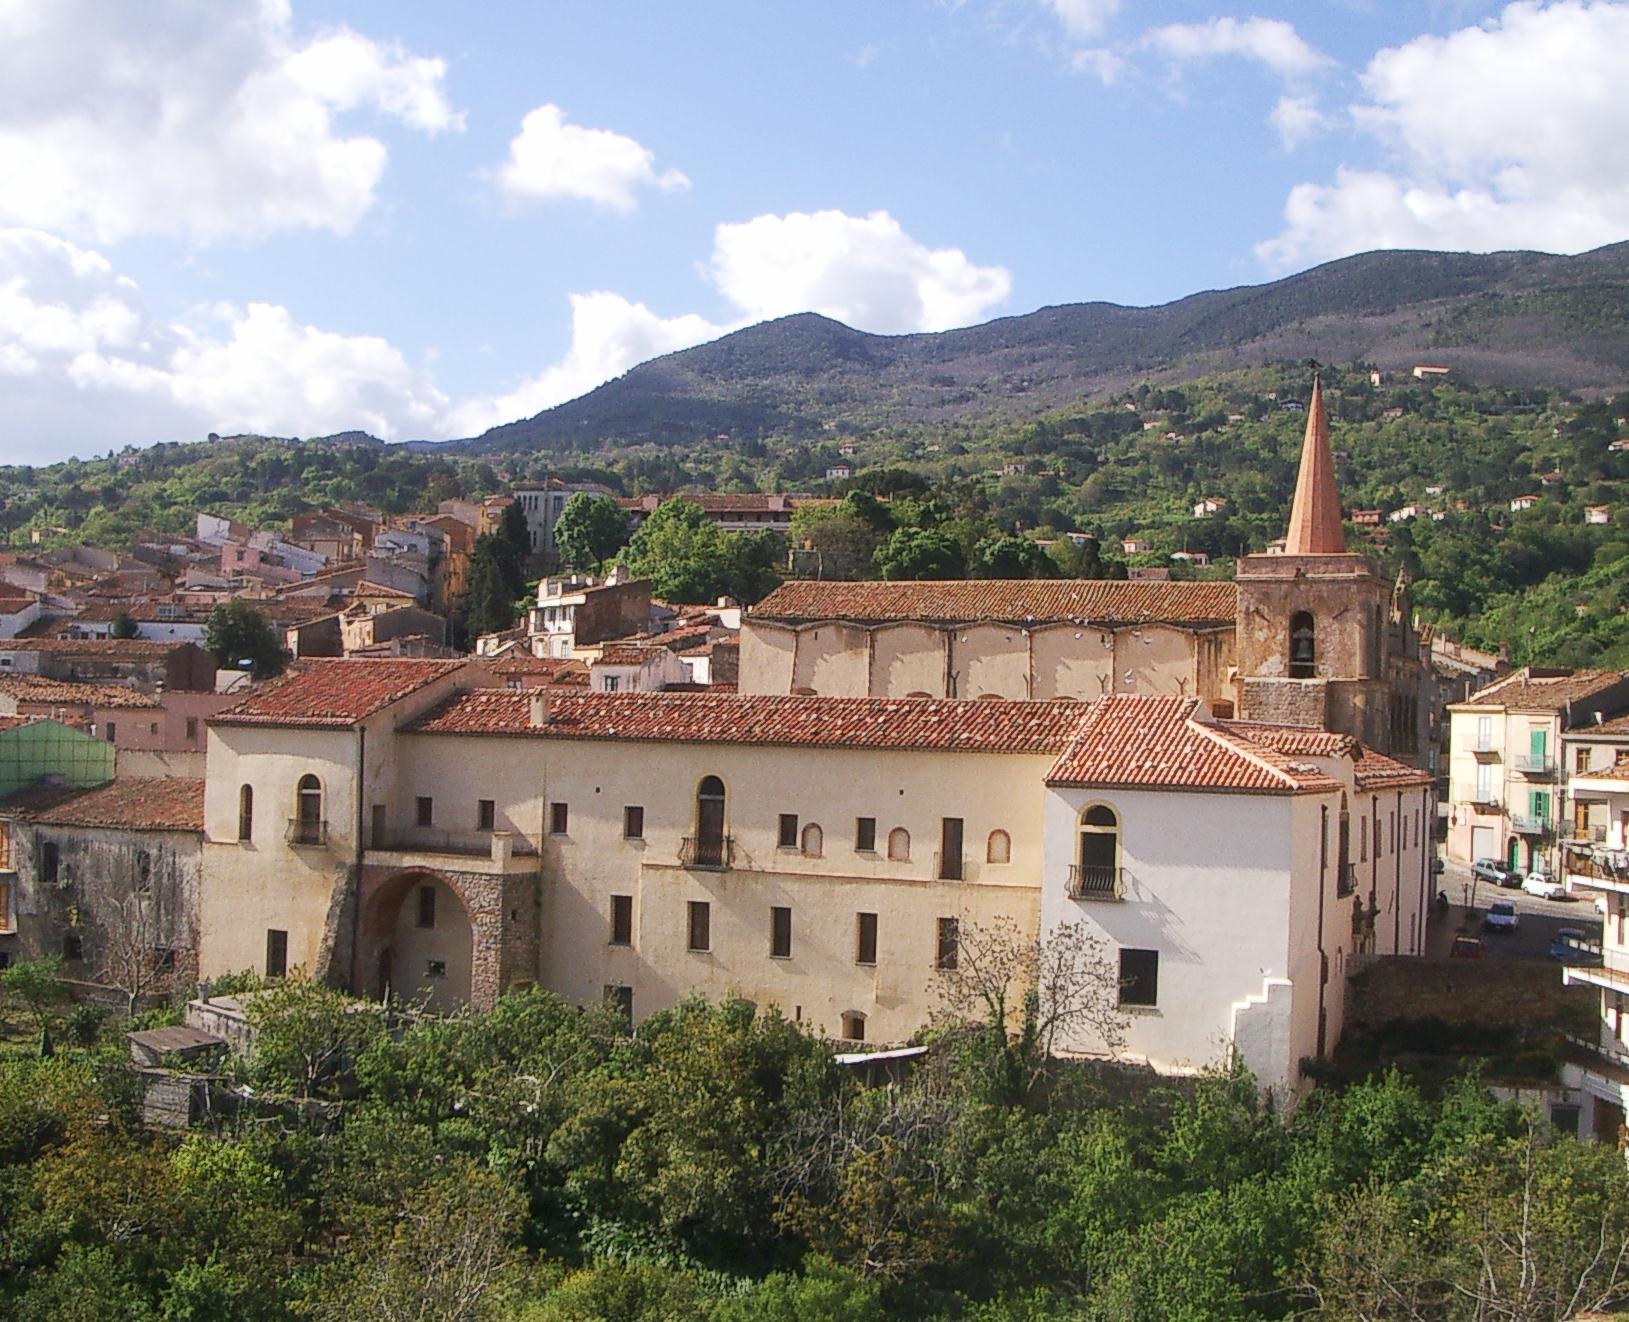 L'ex convento di San Francesco dopo i lavori di restauro, primi anni 2000